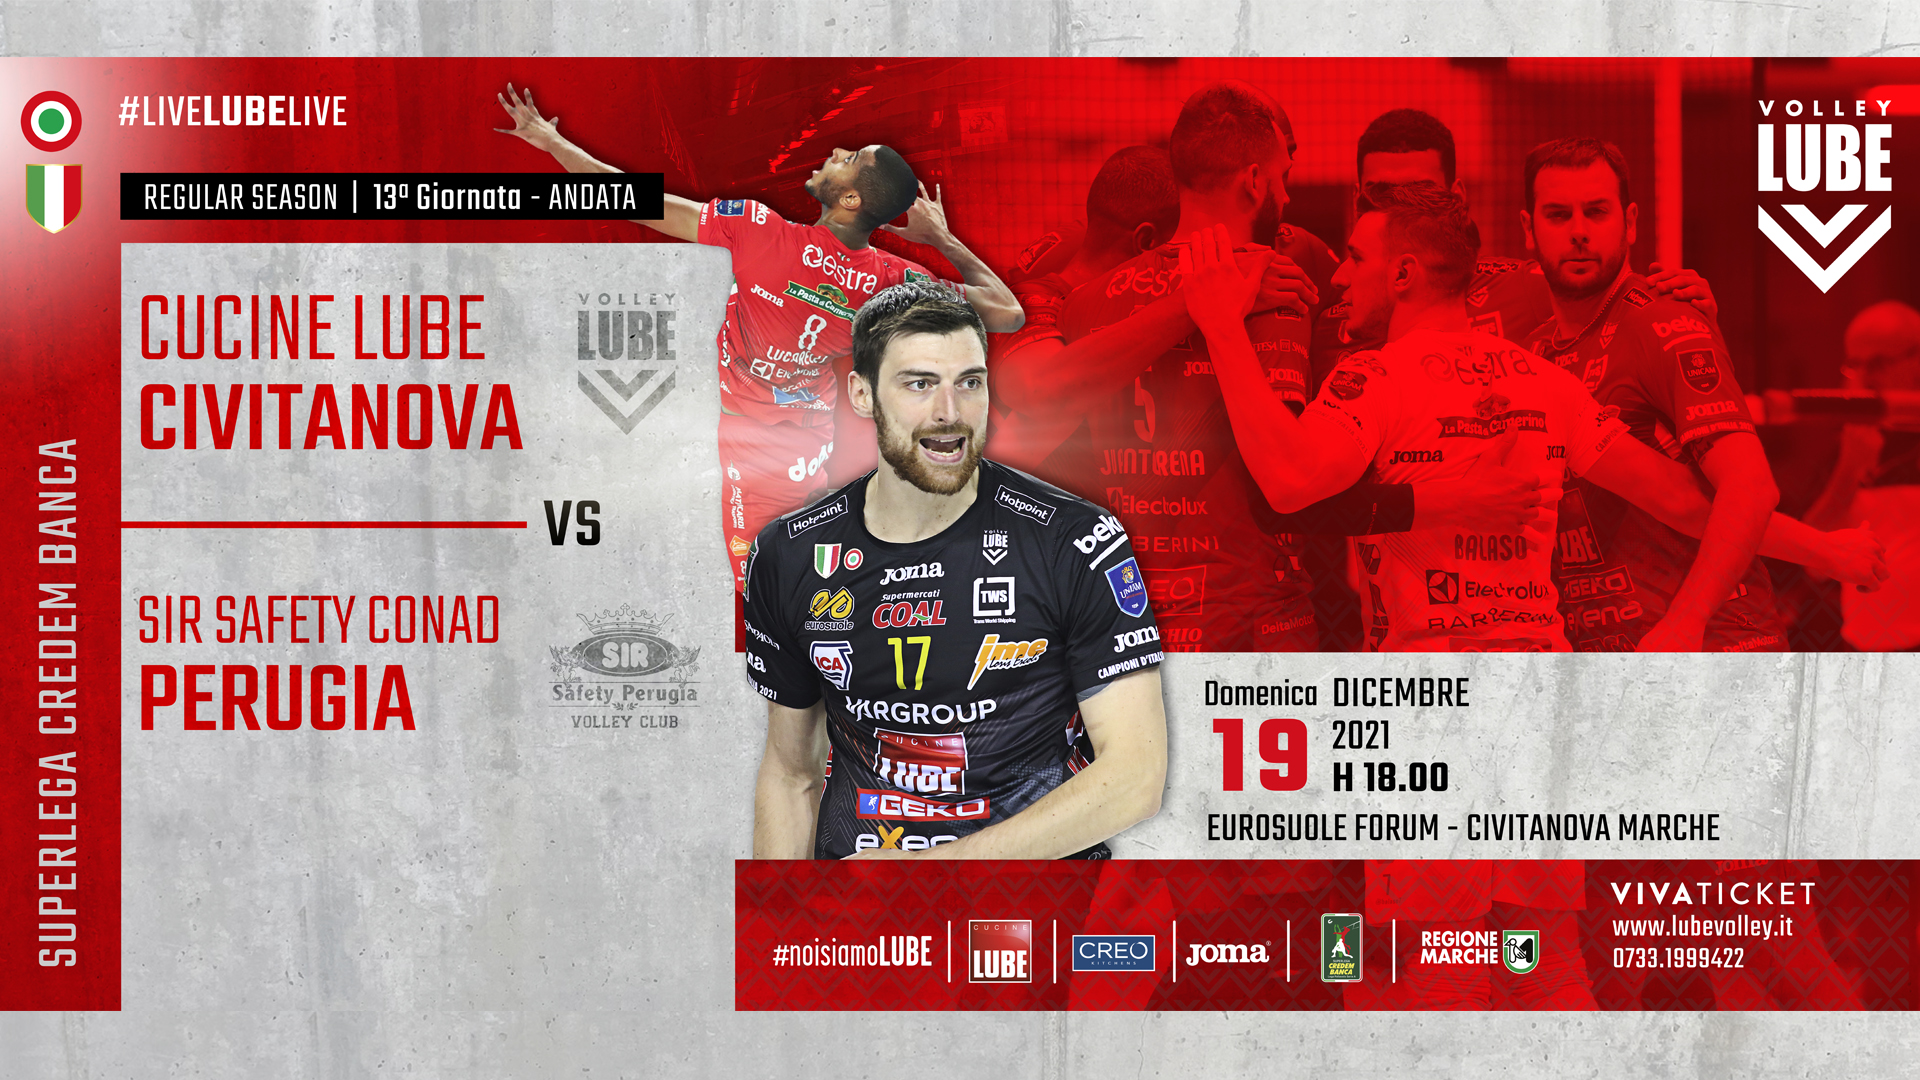 Al via venerdì pomeriggio la prevendita biglietti al botteghino e online per il big match Civitanova-Perugia del 19 dicembre - Lube Volley